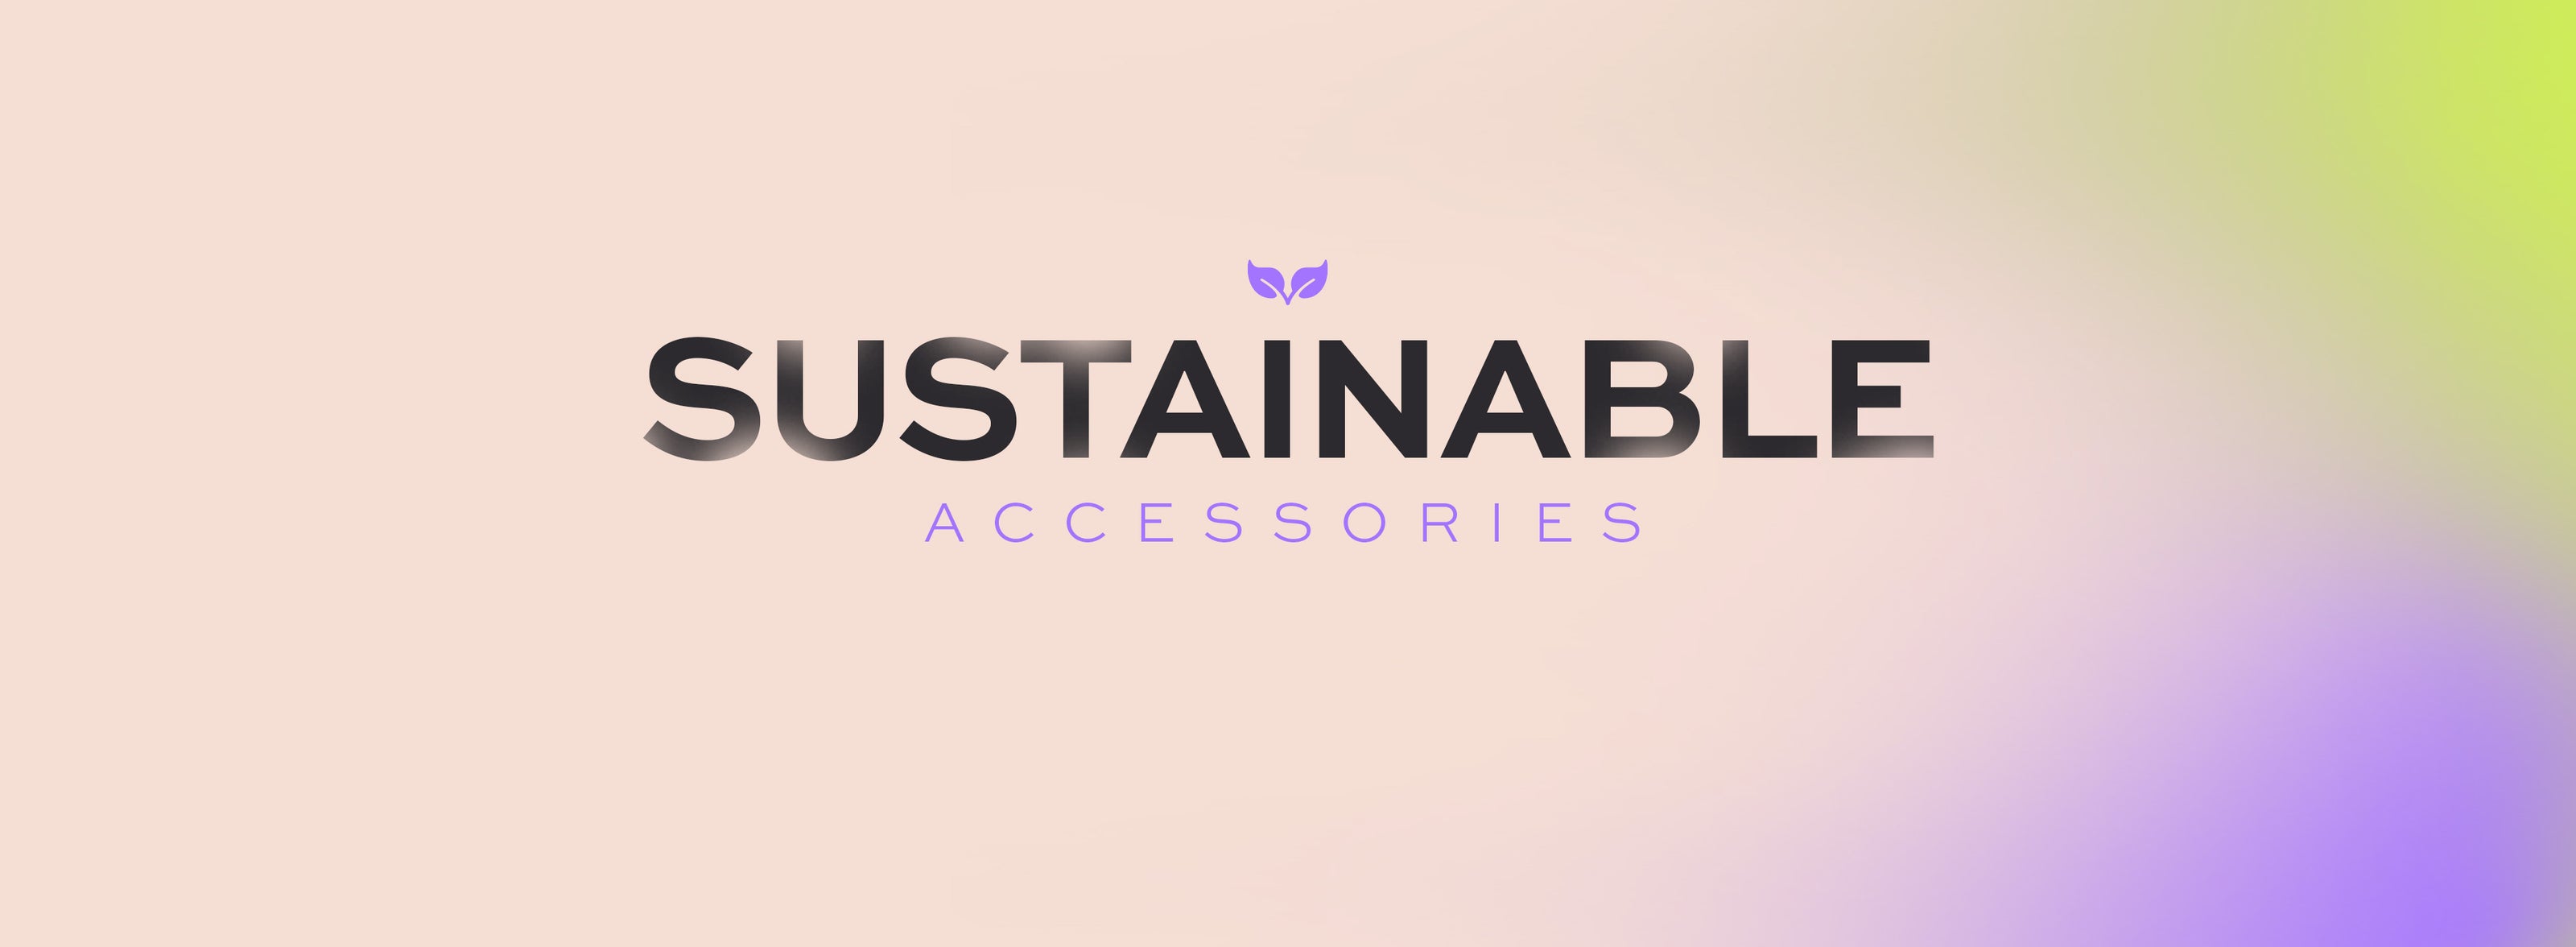 Accesorios sostenibles